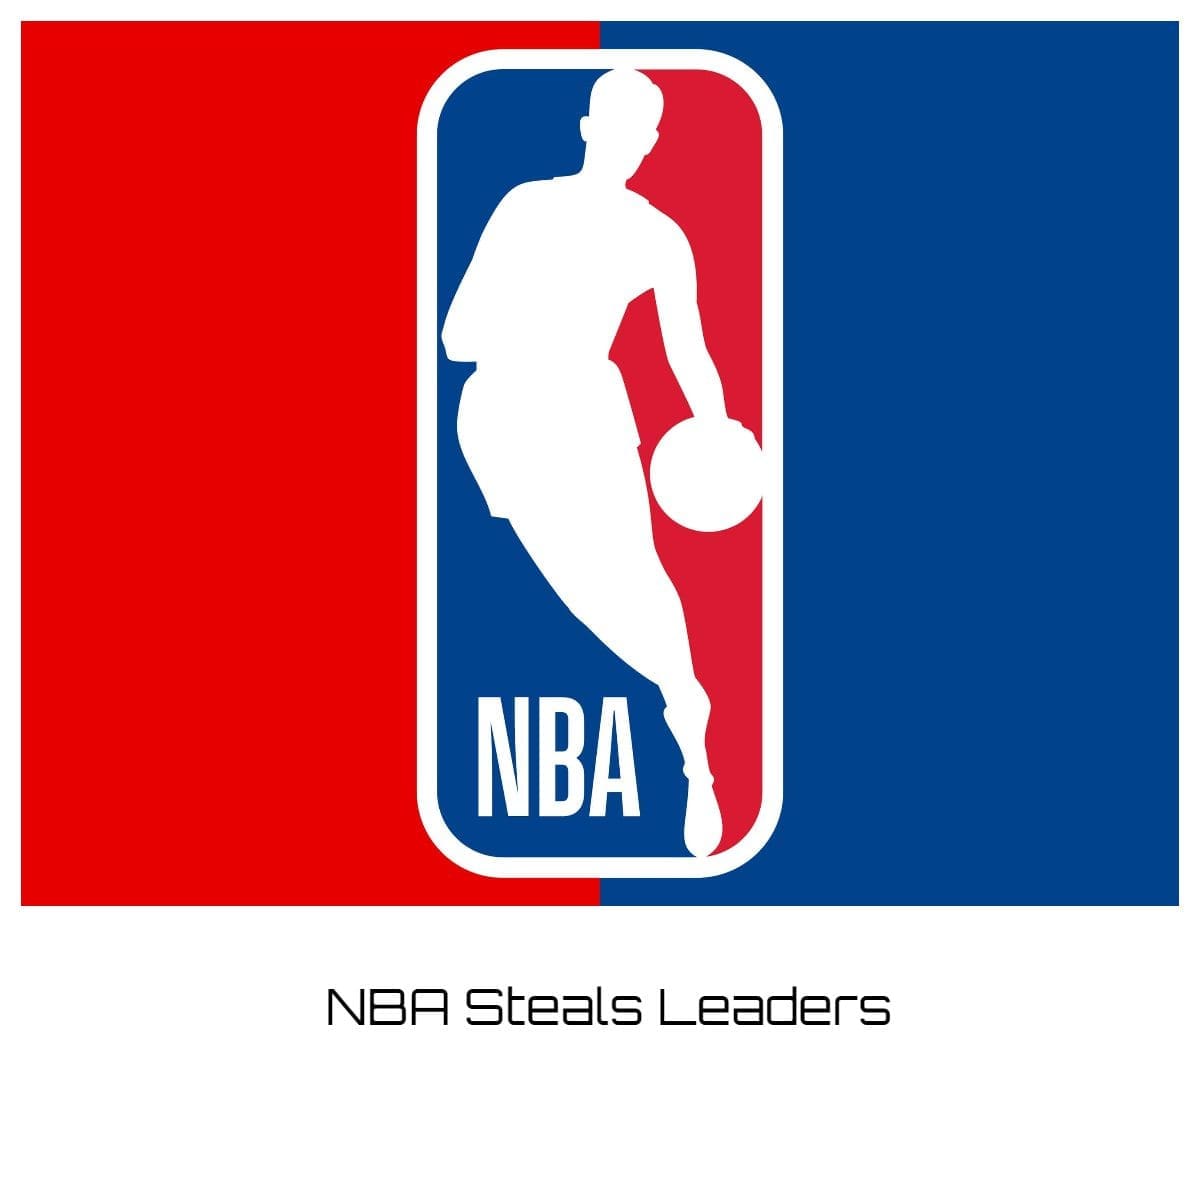 NBA Steals Leaders 202223? Player Rankings